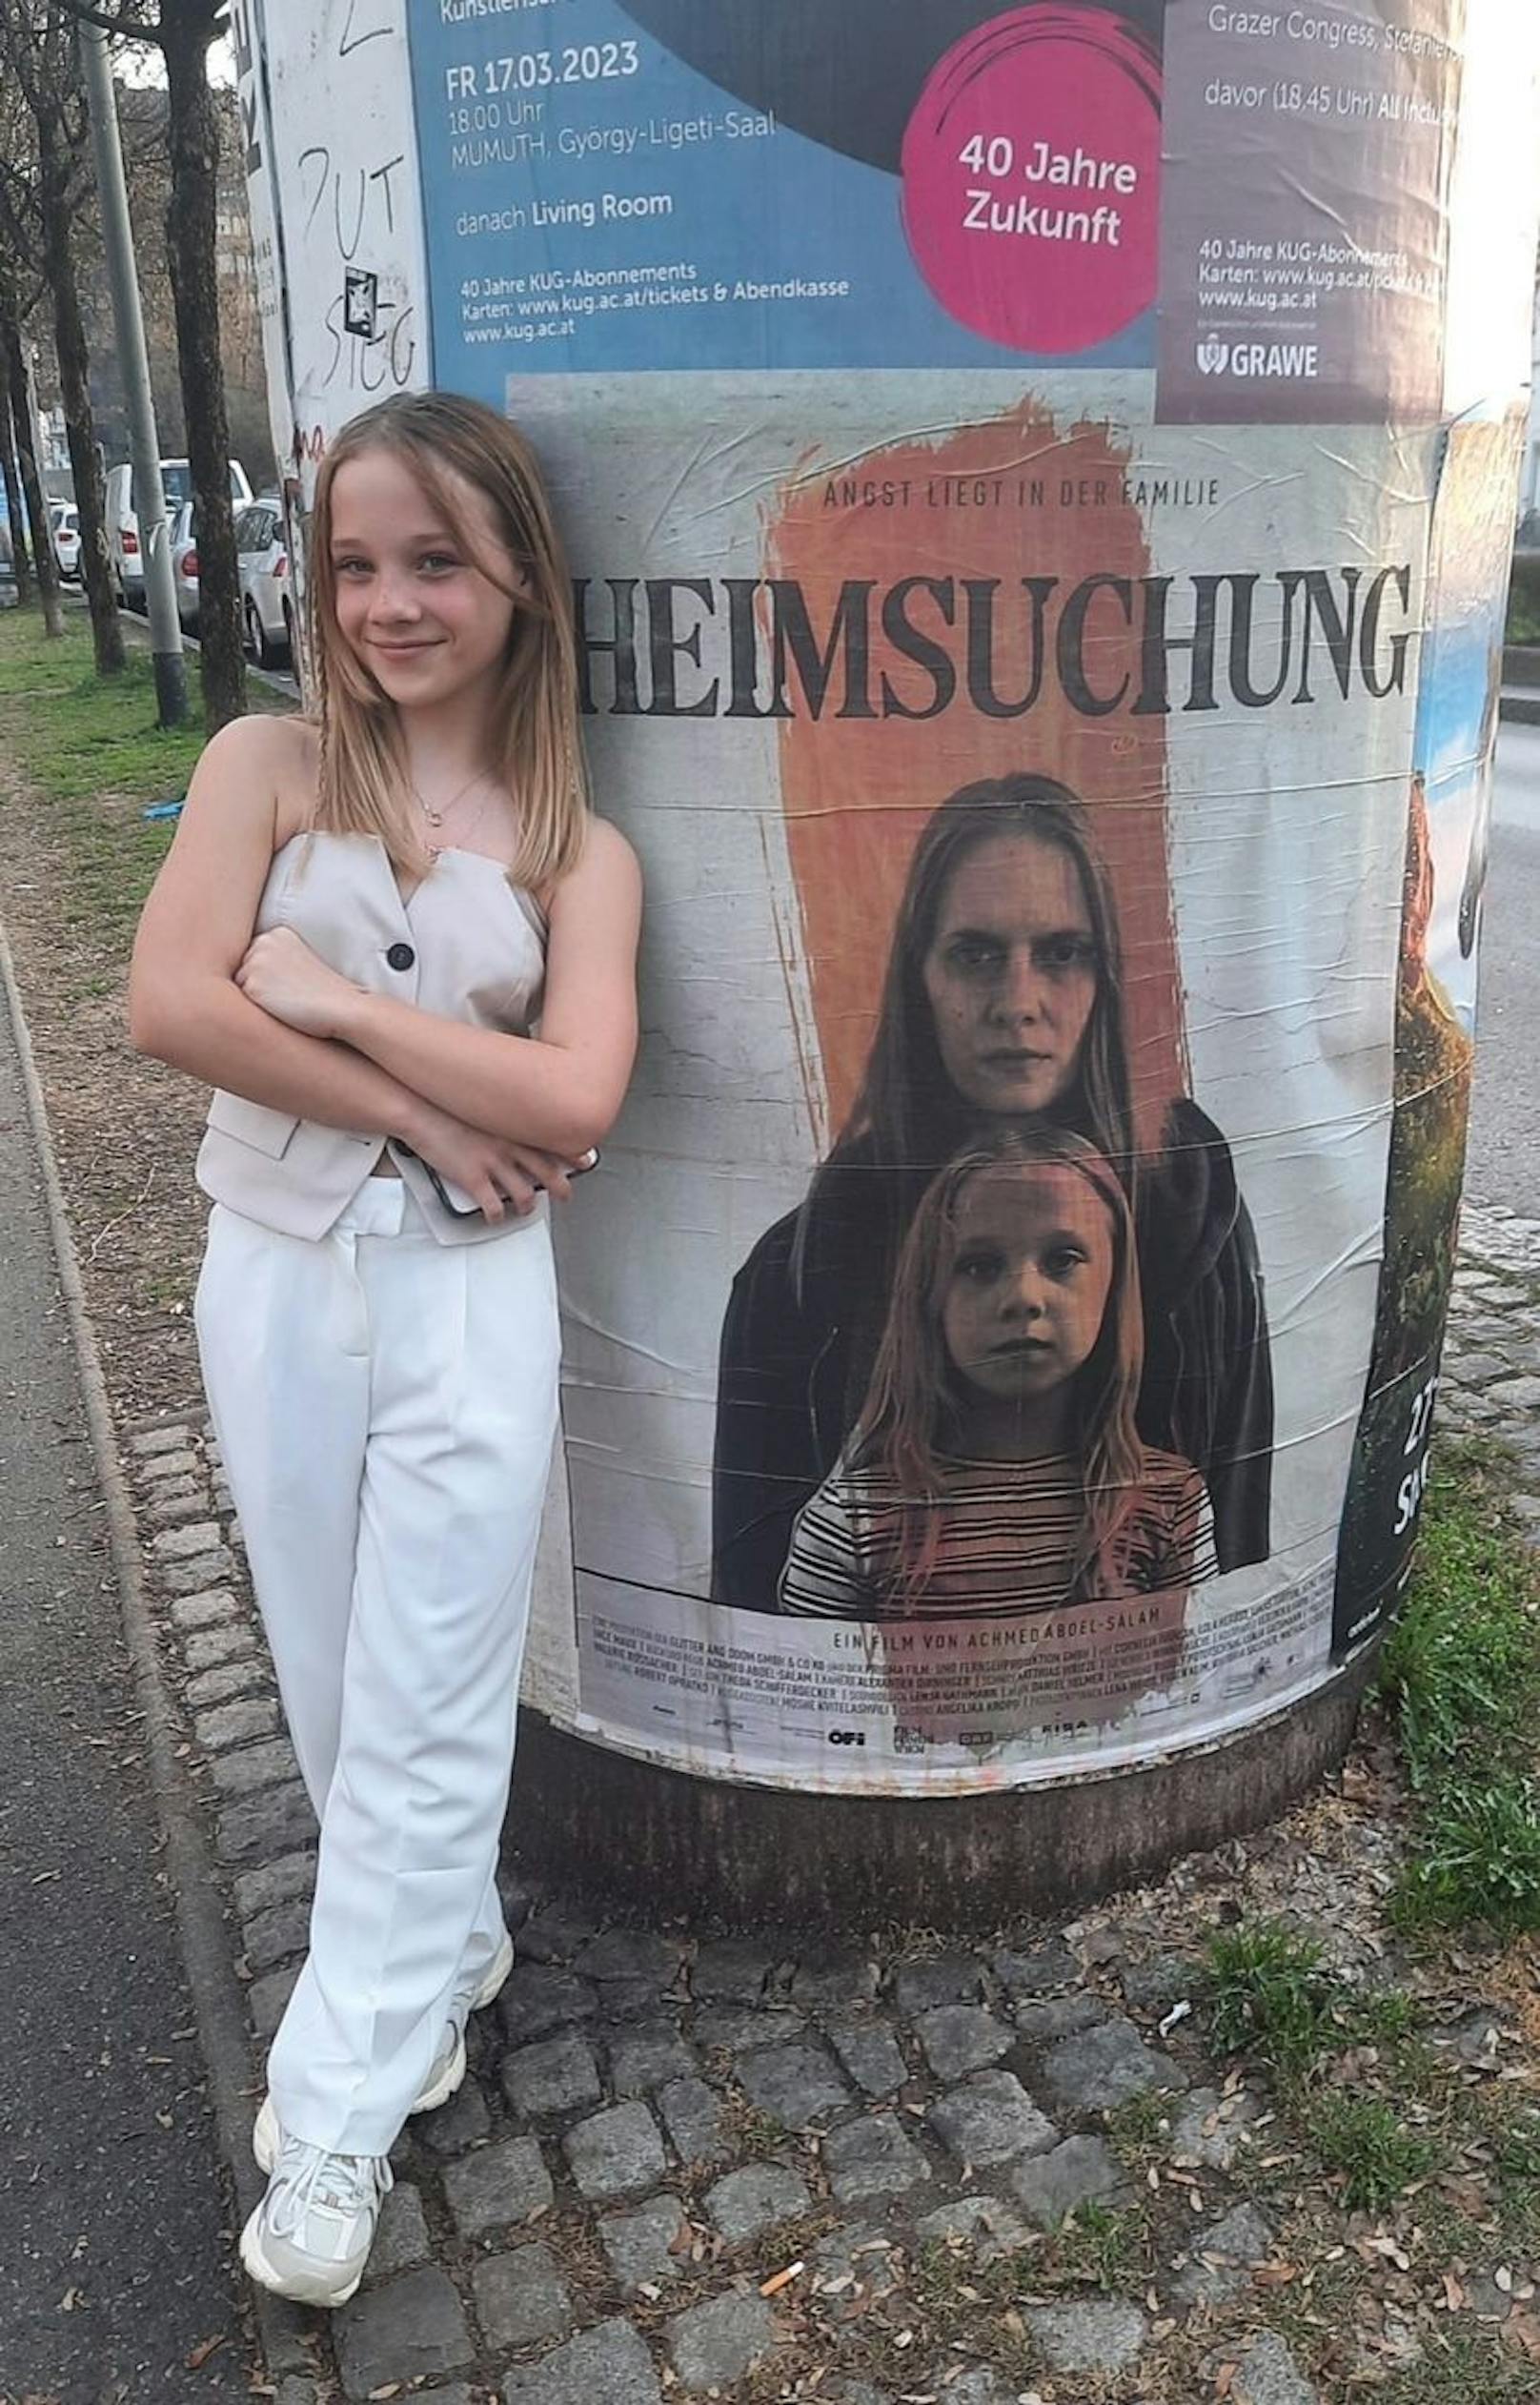 Cool, tough, hübsch: Lola Herbst (11) spielt Hauptrolle in Horrorfilm